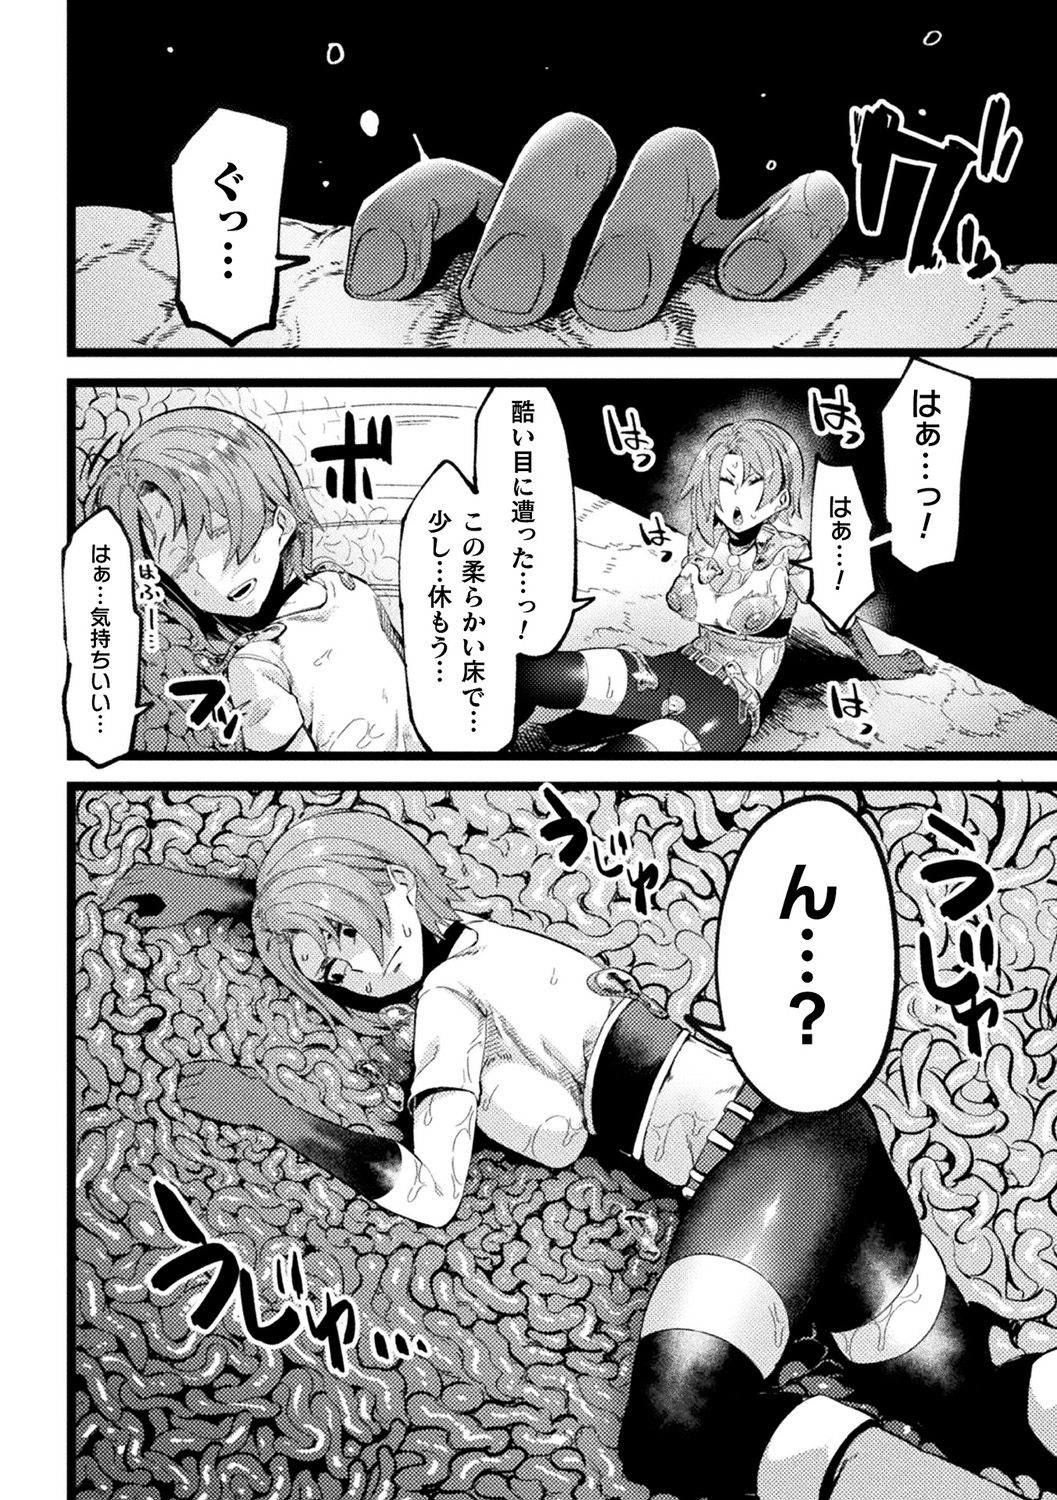 [Anthology] Bessatsu Comic Unreal Ponkotsu Fantasy Heroine H ~Doji o Funde Gyakuten Saretari Ero Trap ni Hamattari!?~ Vol. 2 [Digital] page 49 full